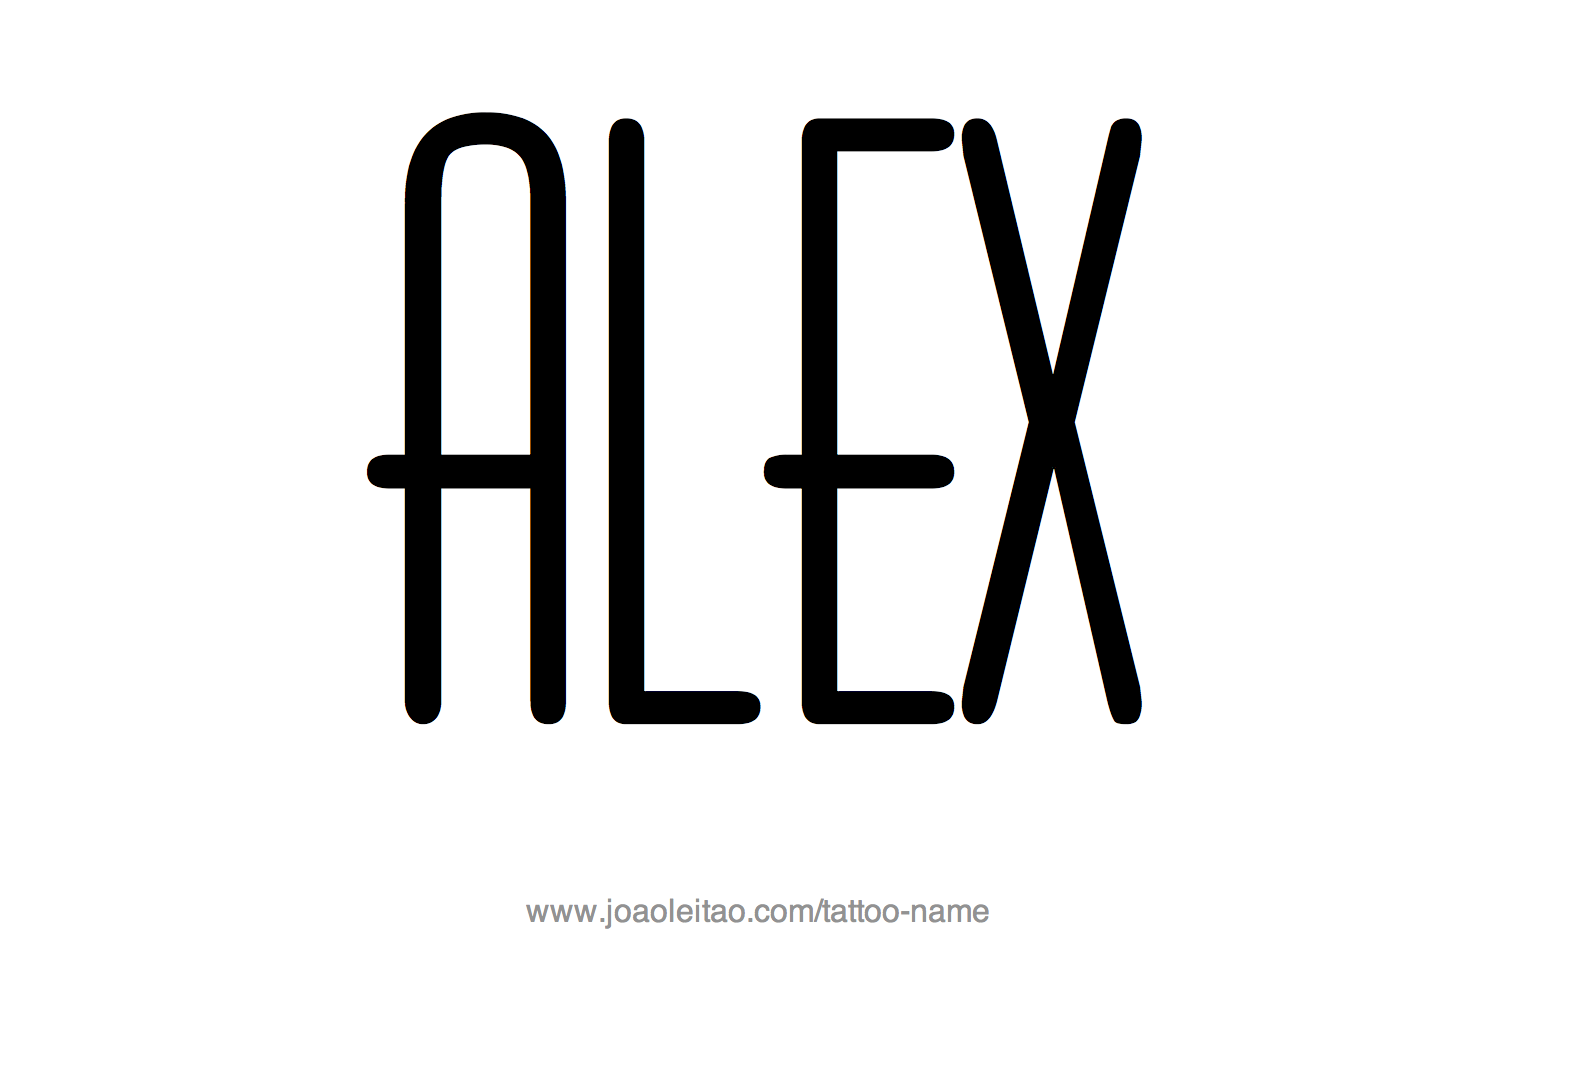 Tattoo Design Name Alex